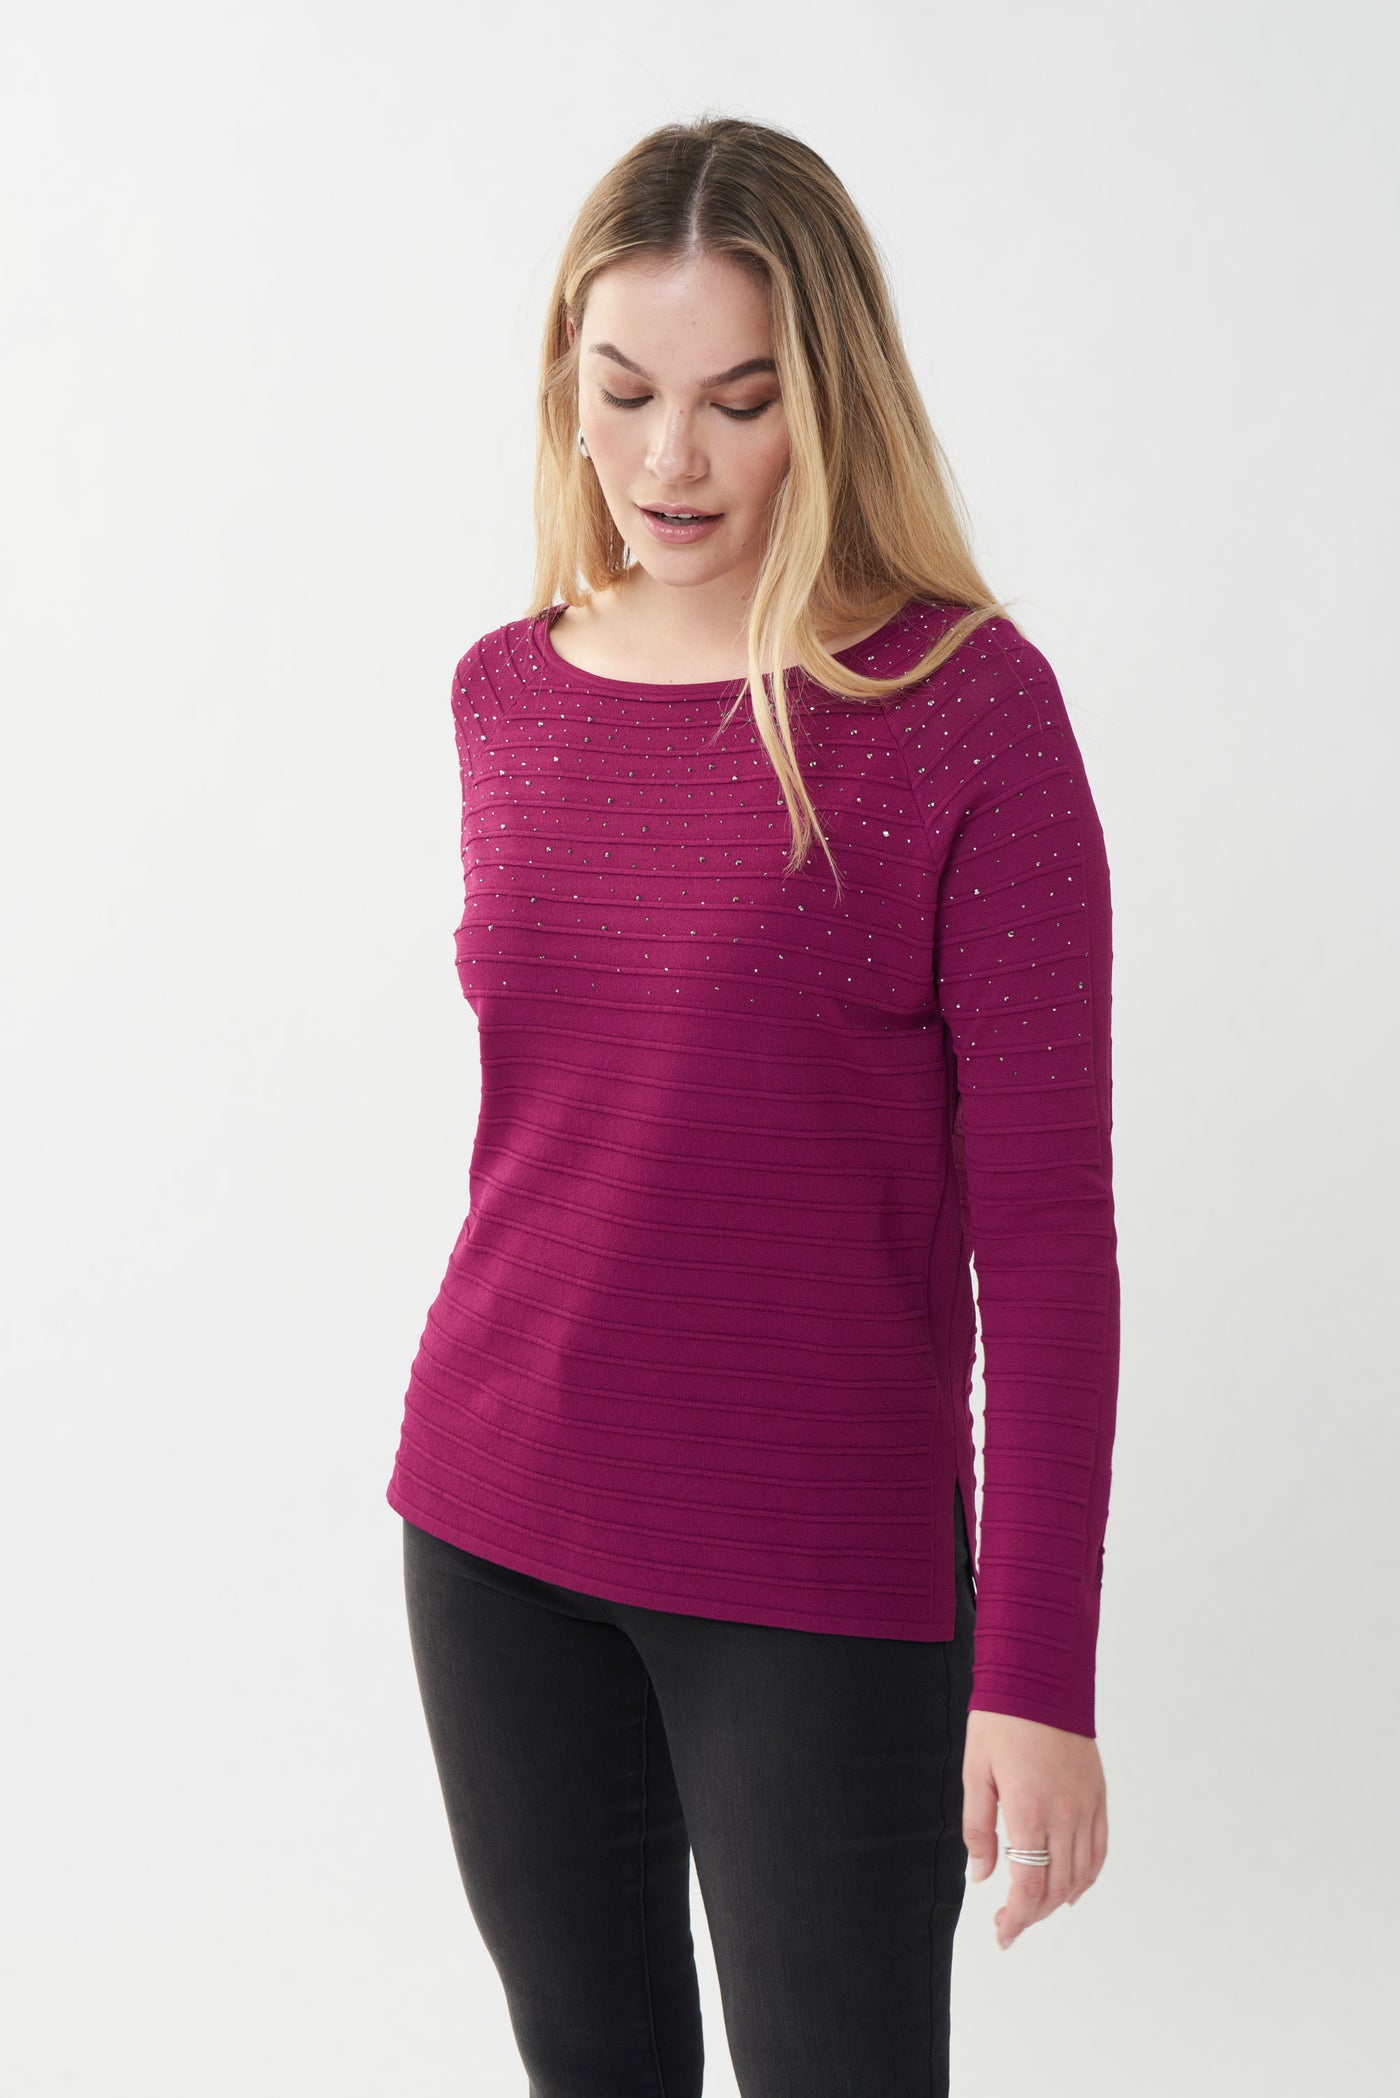 Joseph Ribkoff Embellished Sweater Style 223955 